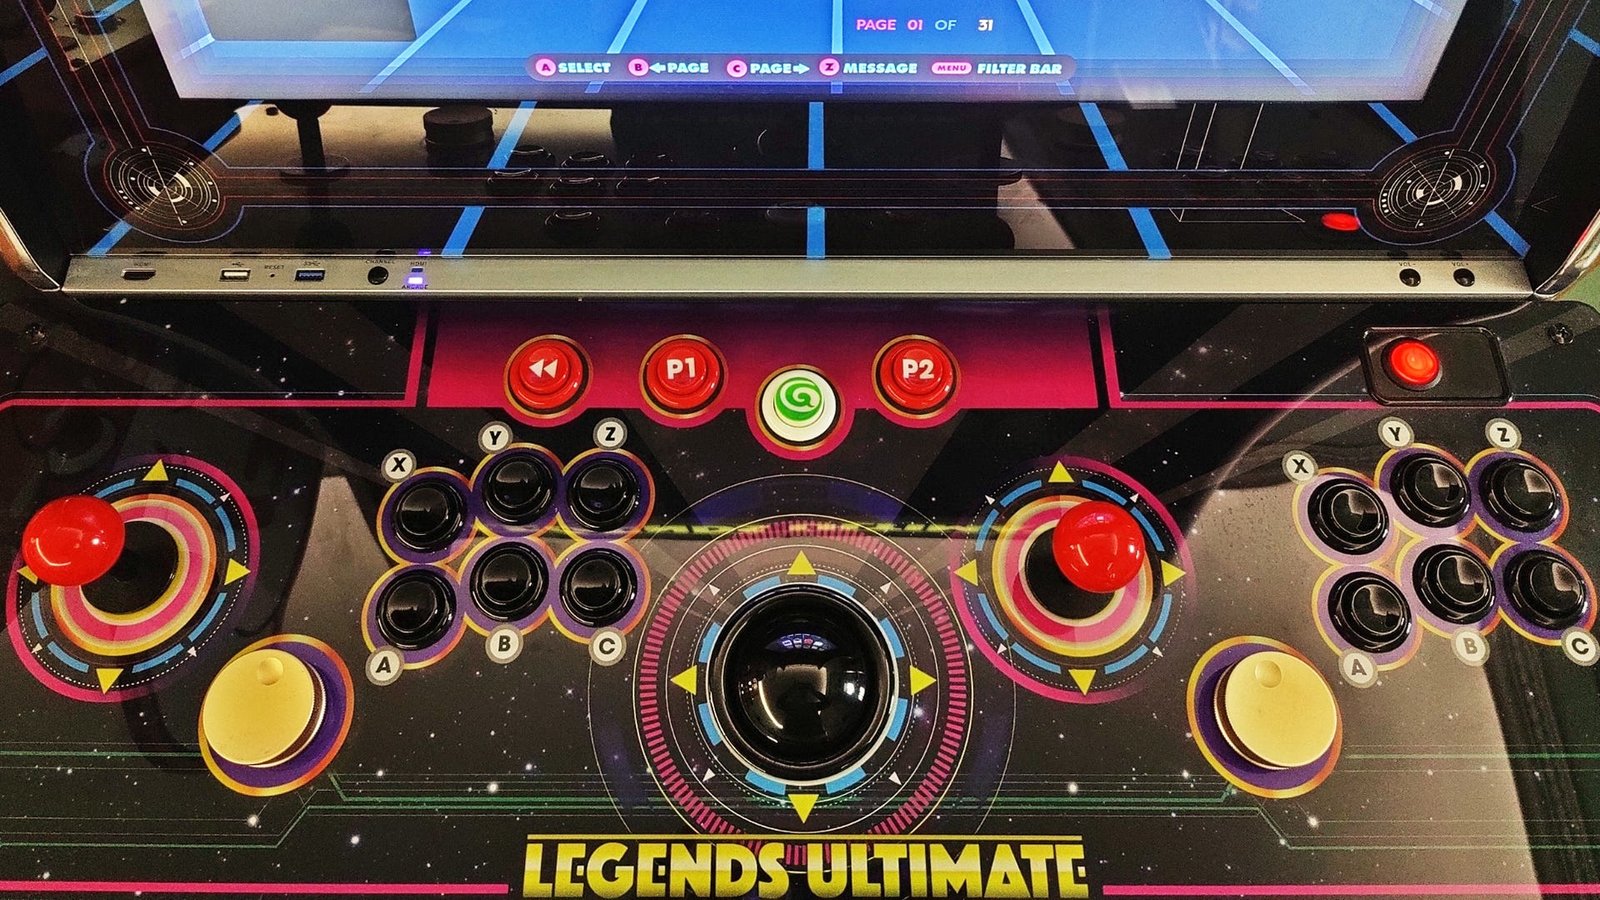 المنظر العلوي للوحة تحكم Legends Ultimate ، والتي تشتمل على ذراعان تحكم ، و 12 زرًا ، واثنين من أزرار التحكم وكرة التتبع.